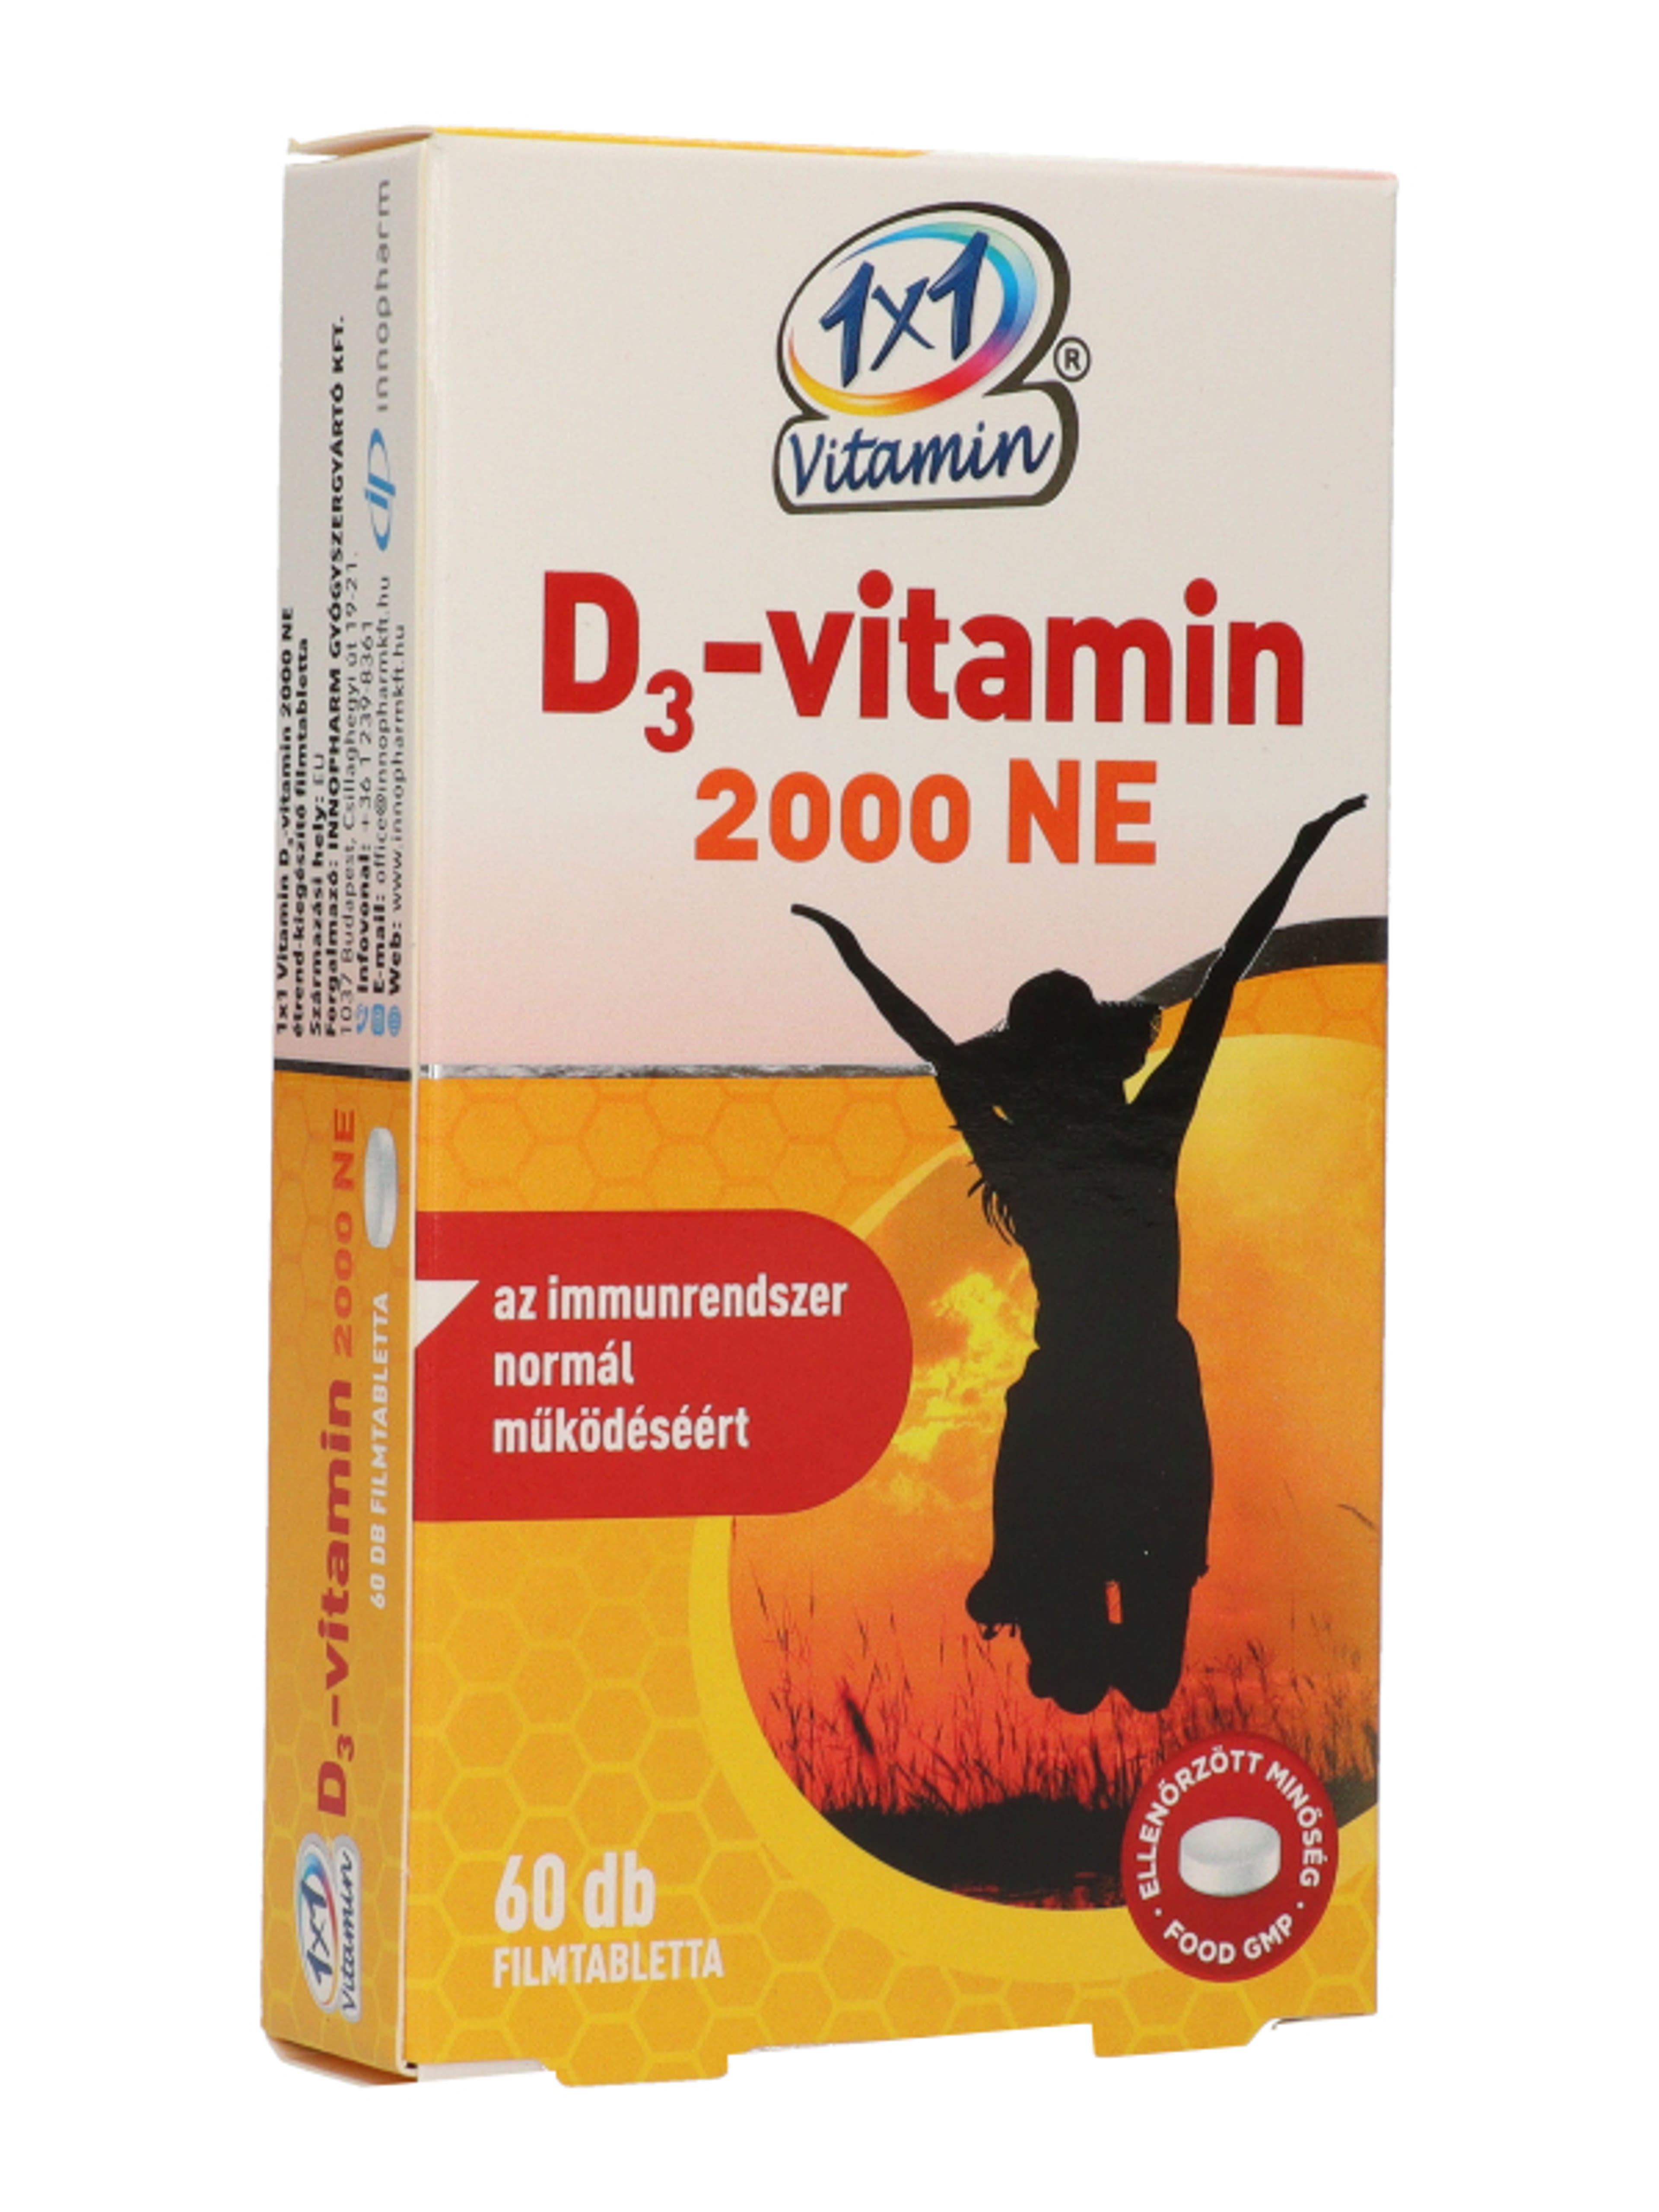 1x1 vitamin D3 2000Ne - 60 db-5